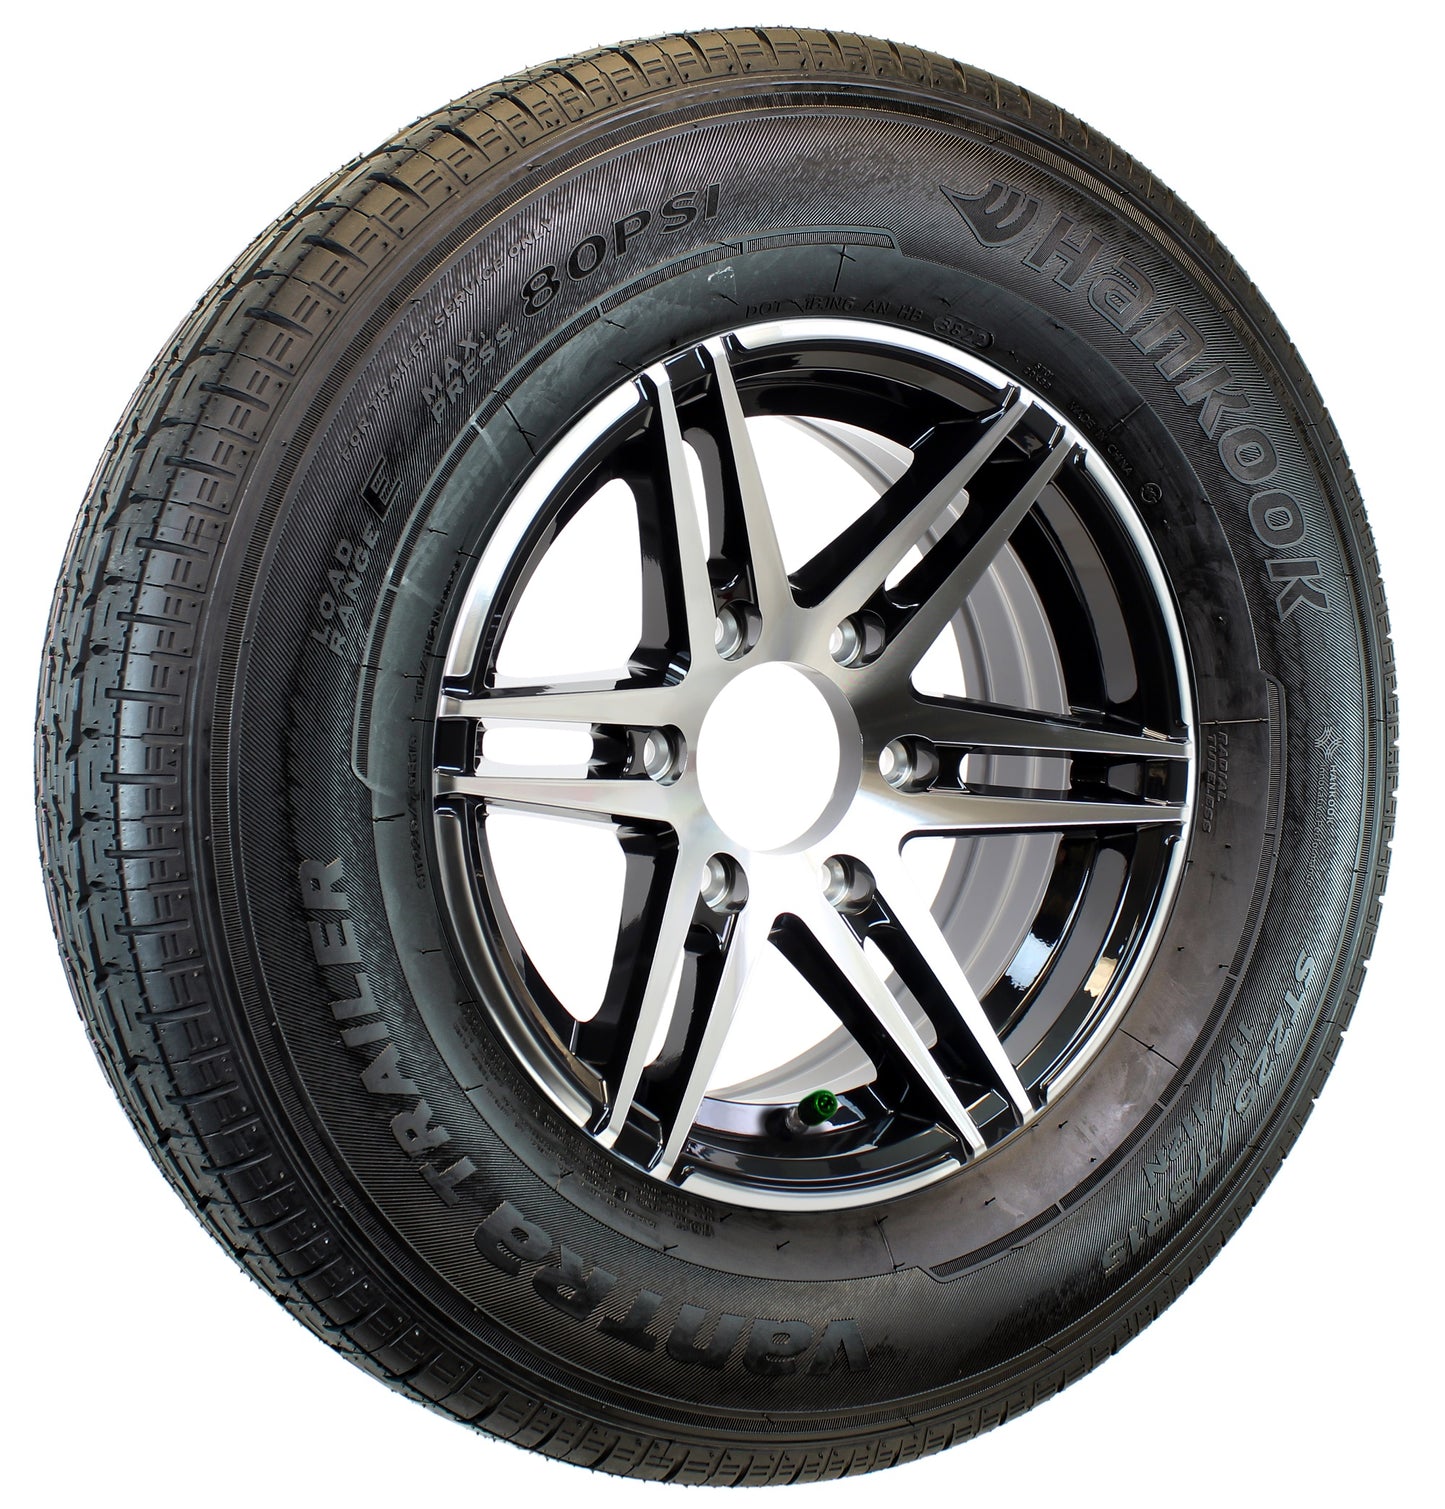 Hankook ST225/75R15 Trailer Tire On Black eCustomrim Aluminum 6 Lug Wheel LRE